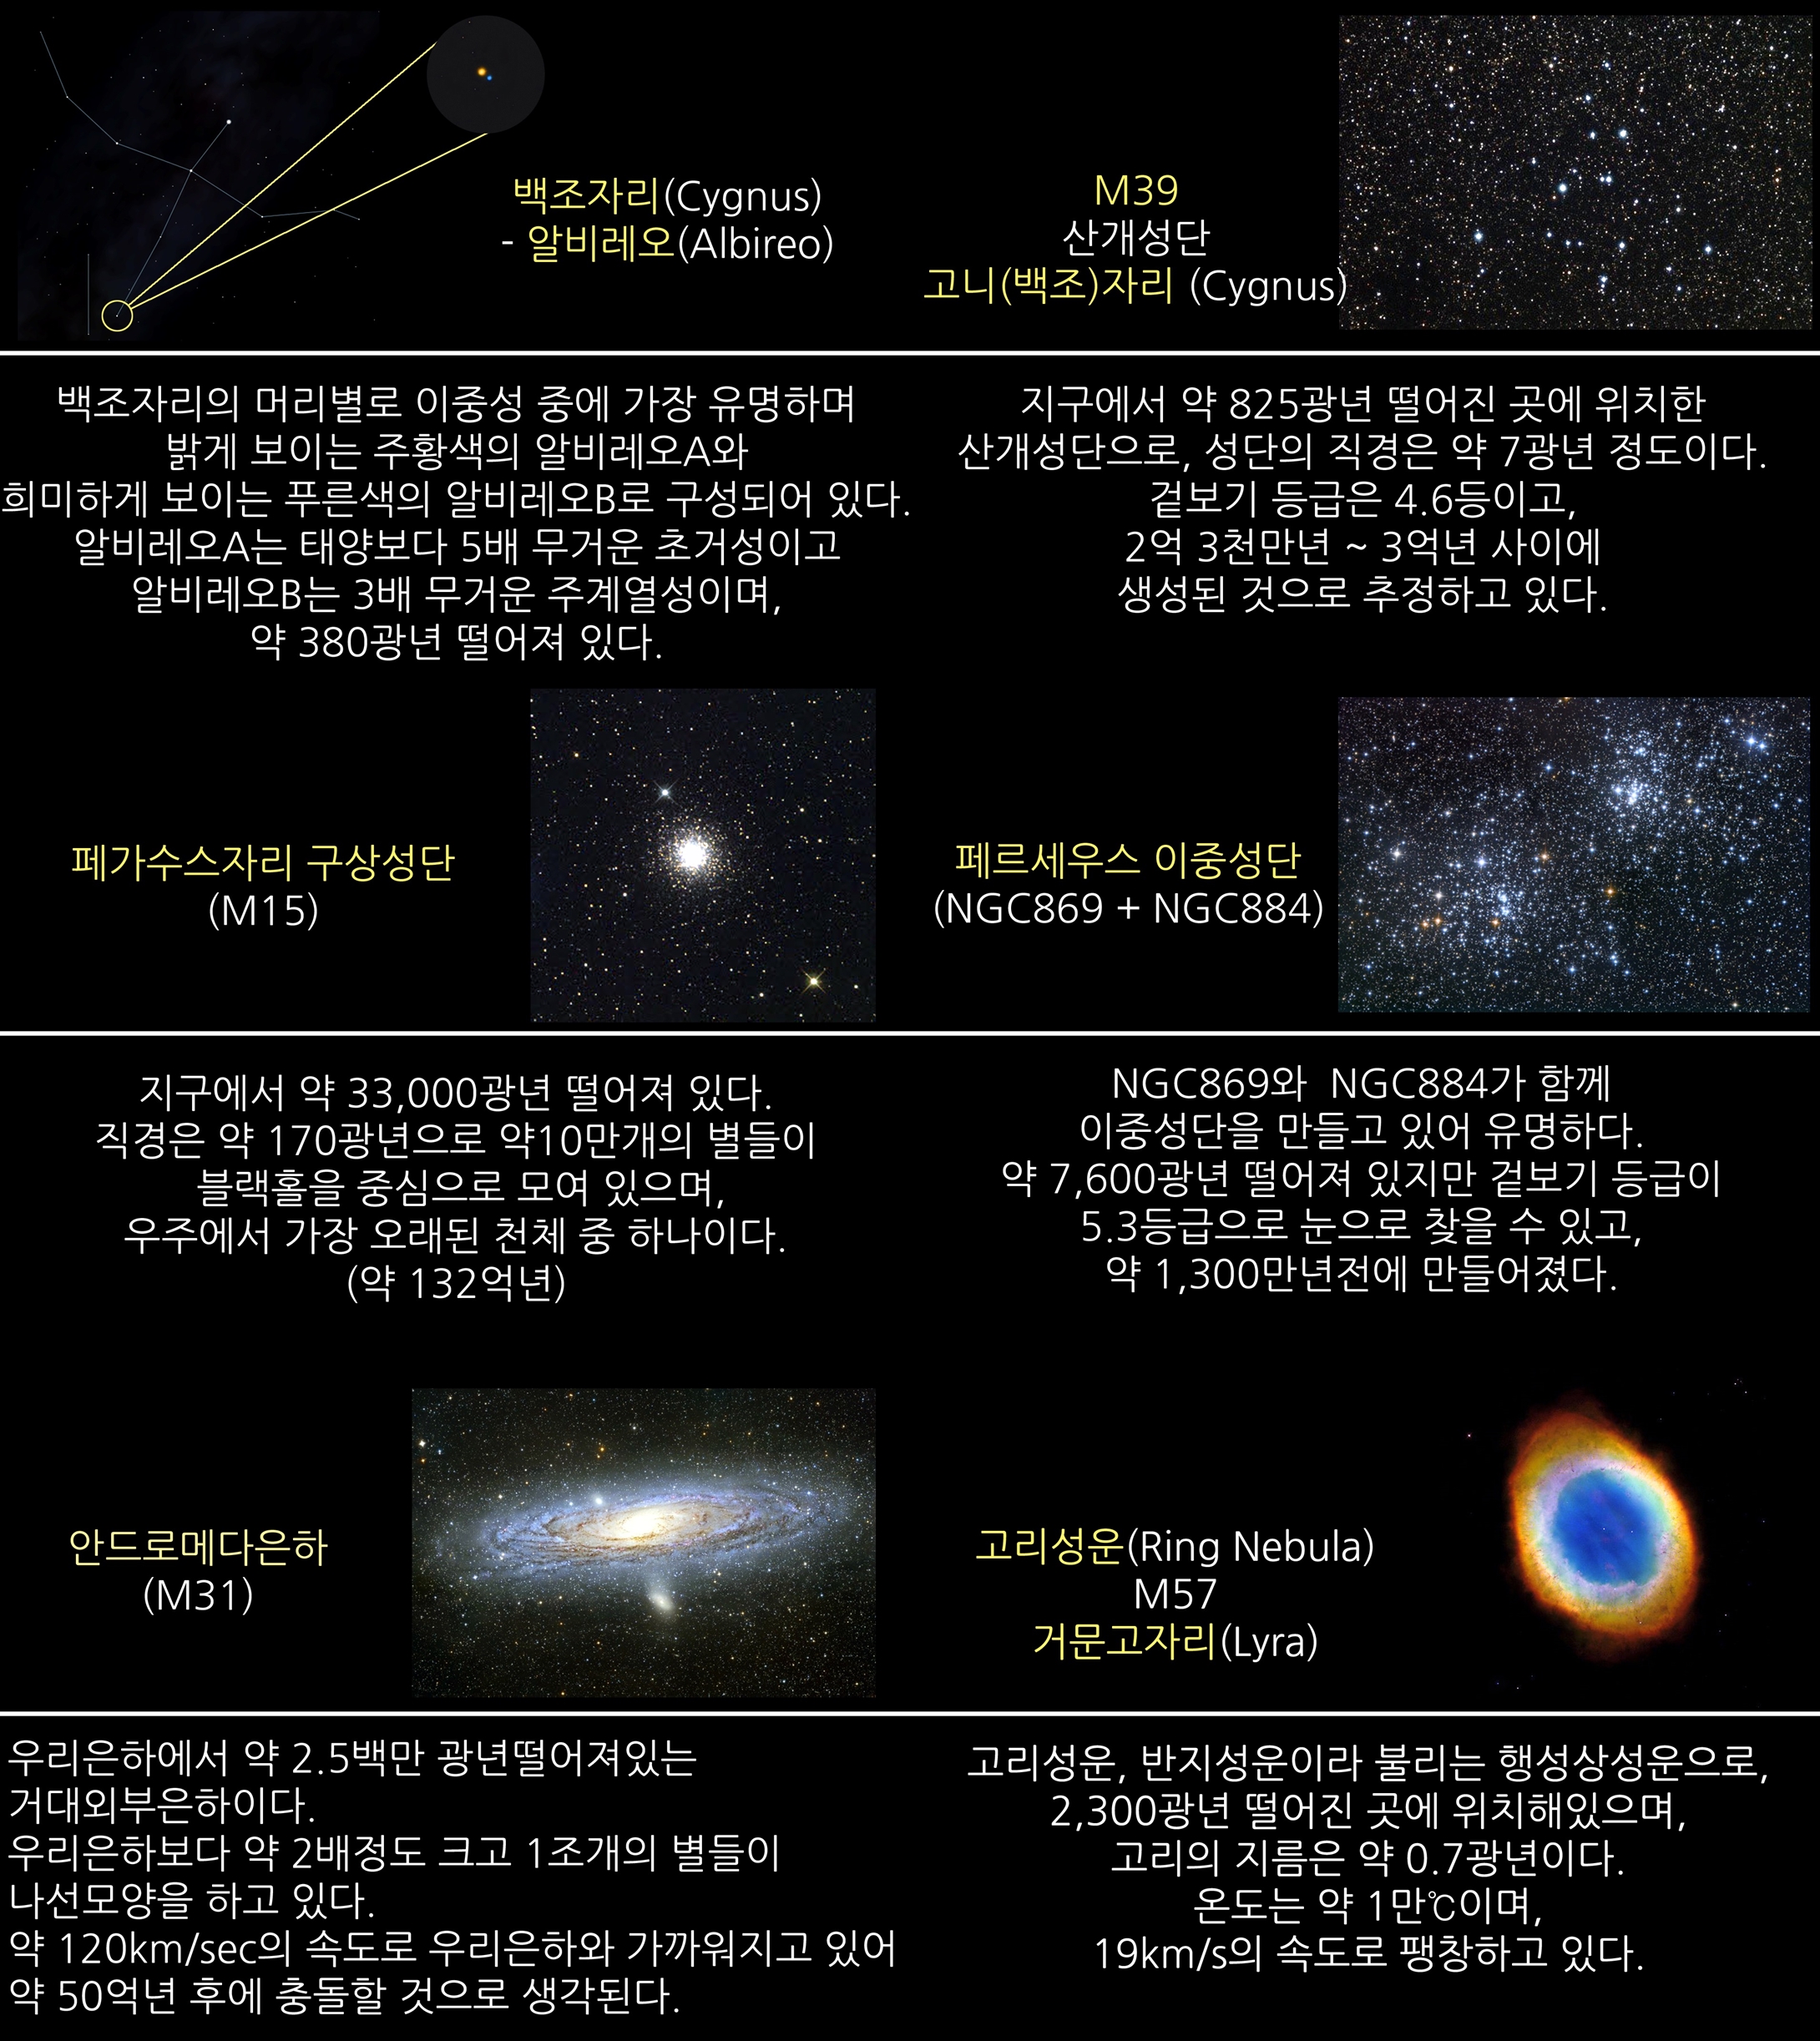 2017년 10월 주요 천체관측 대상